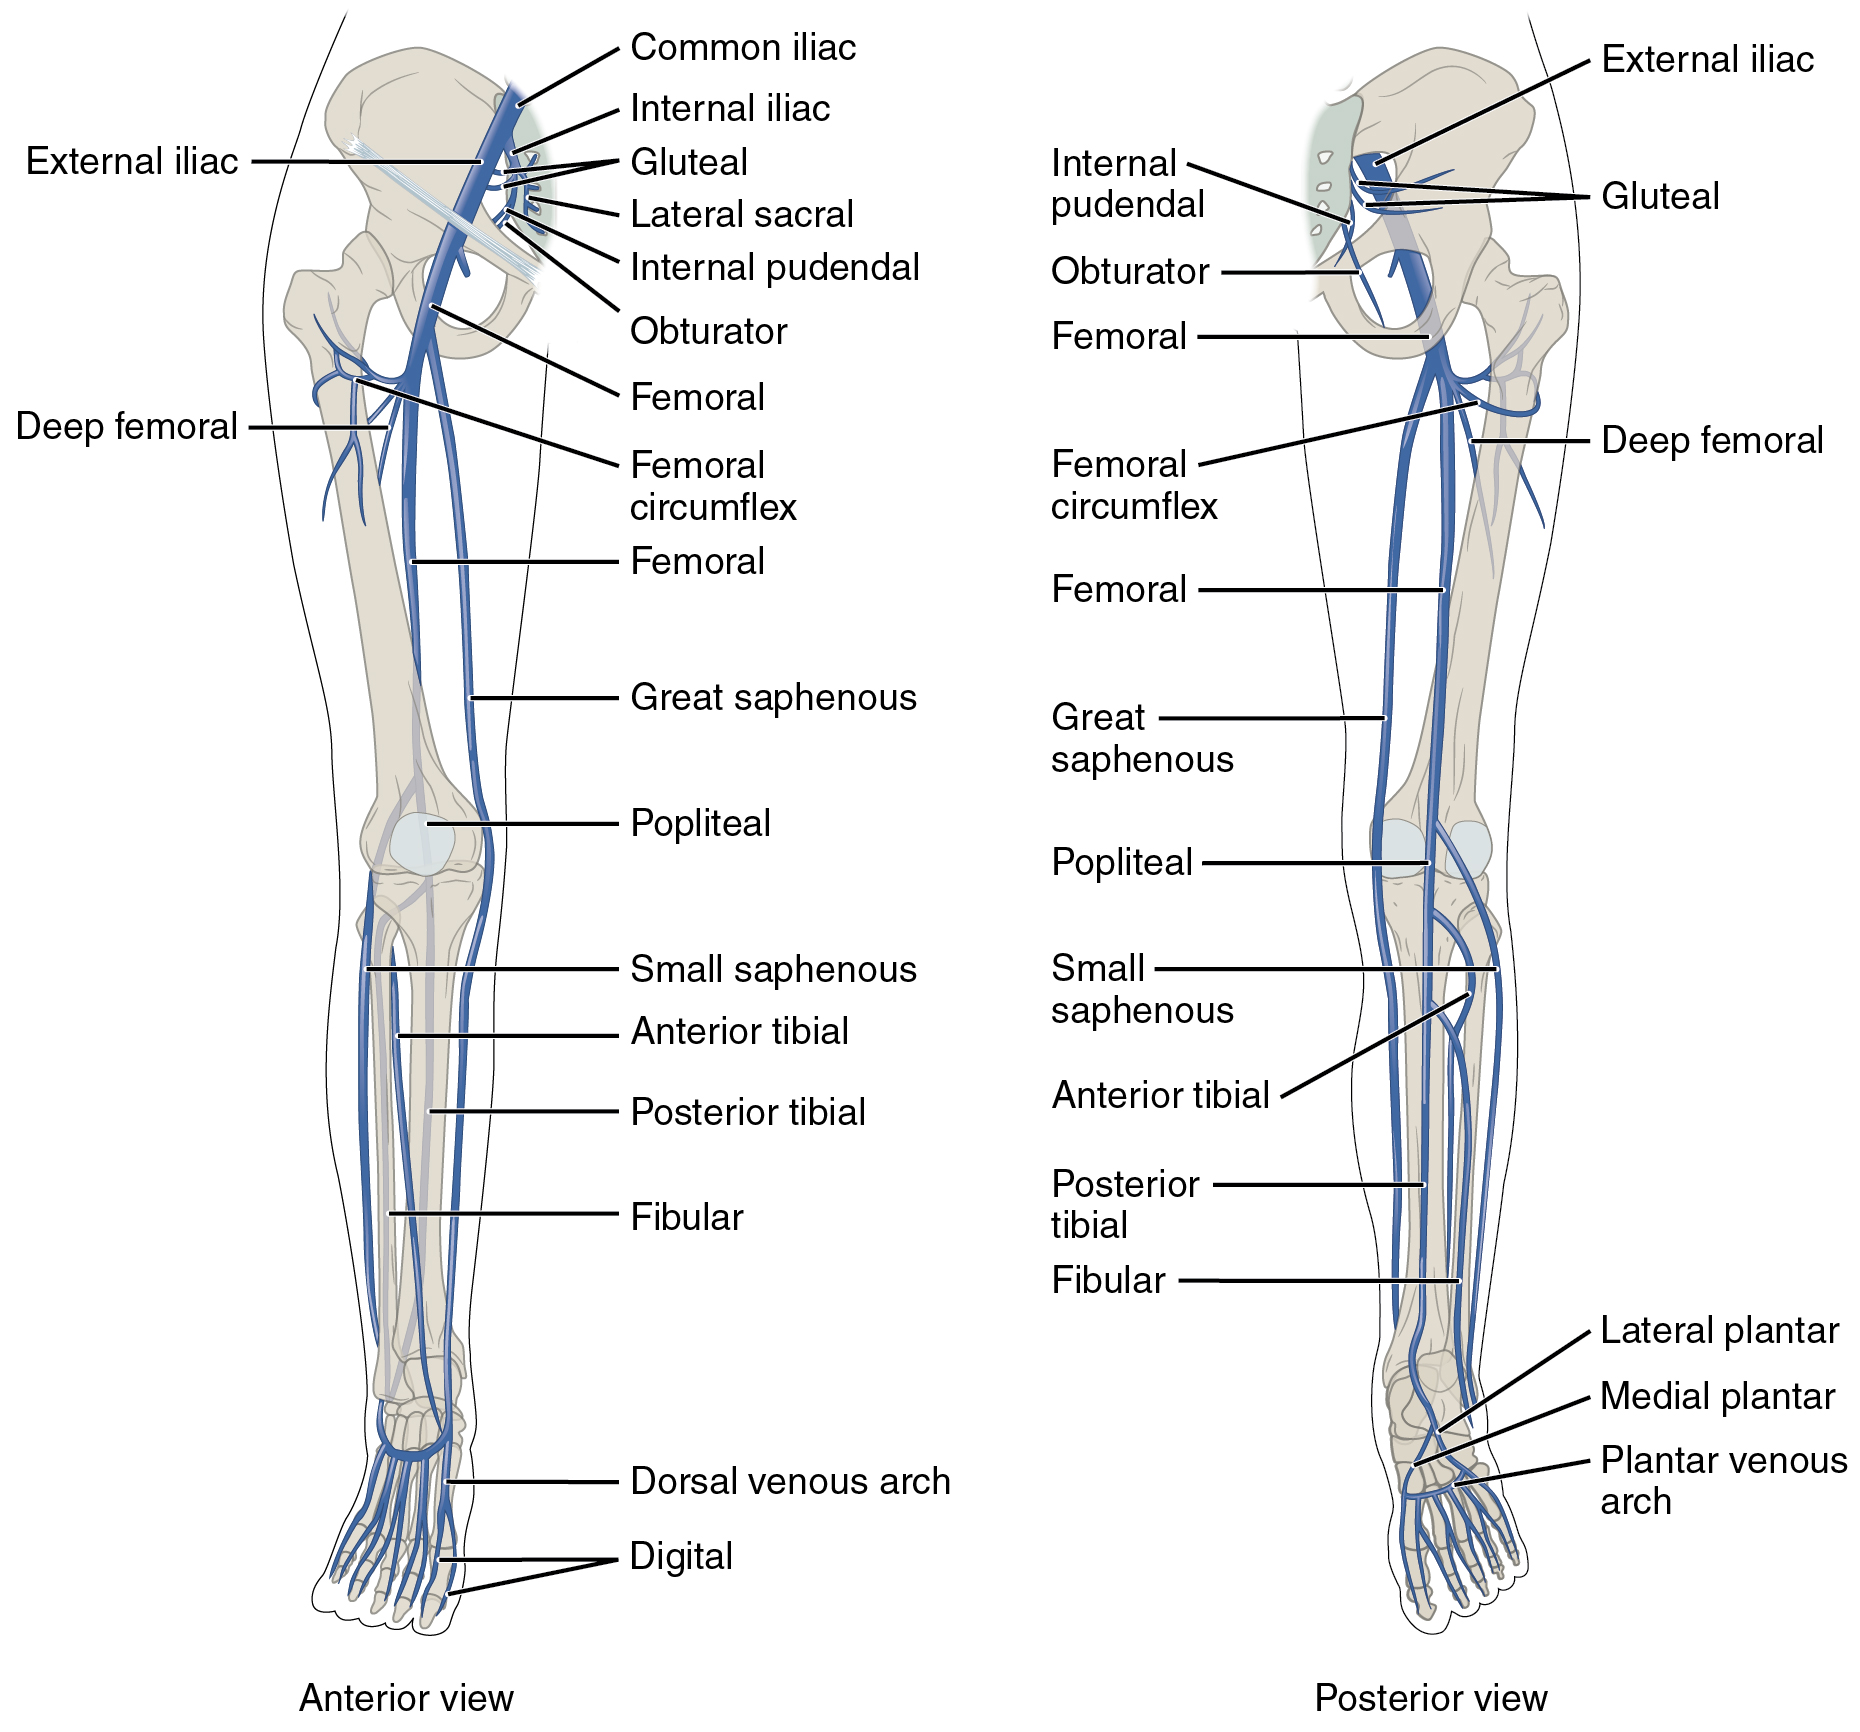 O painel esquerdo mostra a visão anterior das veias nas pernas e o painel direito mostra a visão posterior.